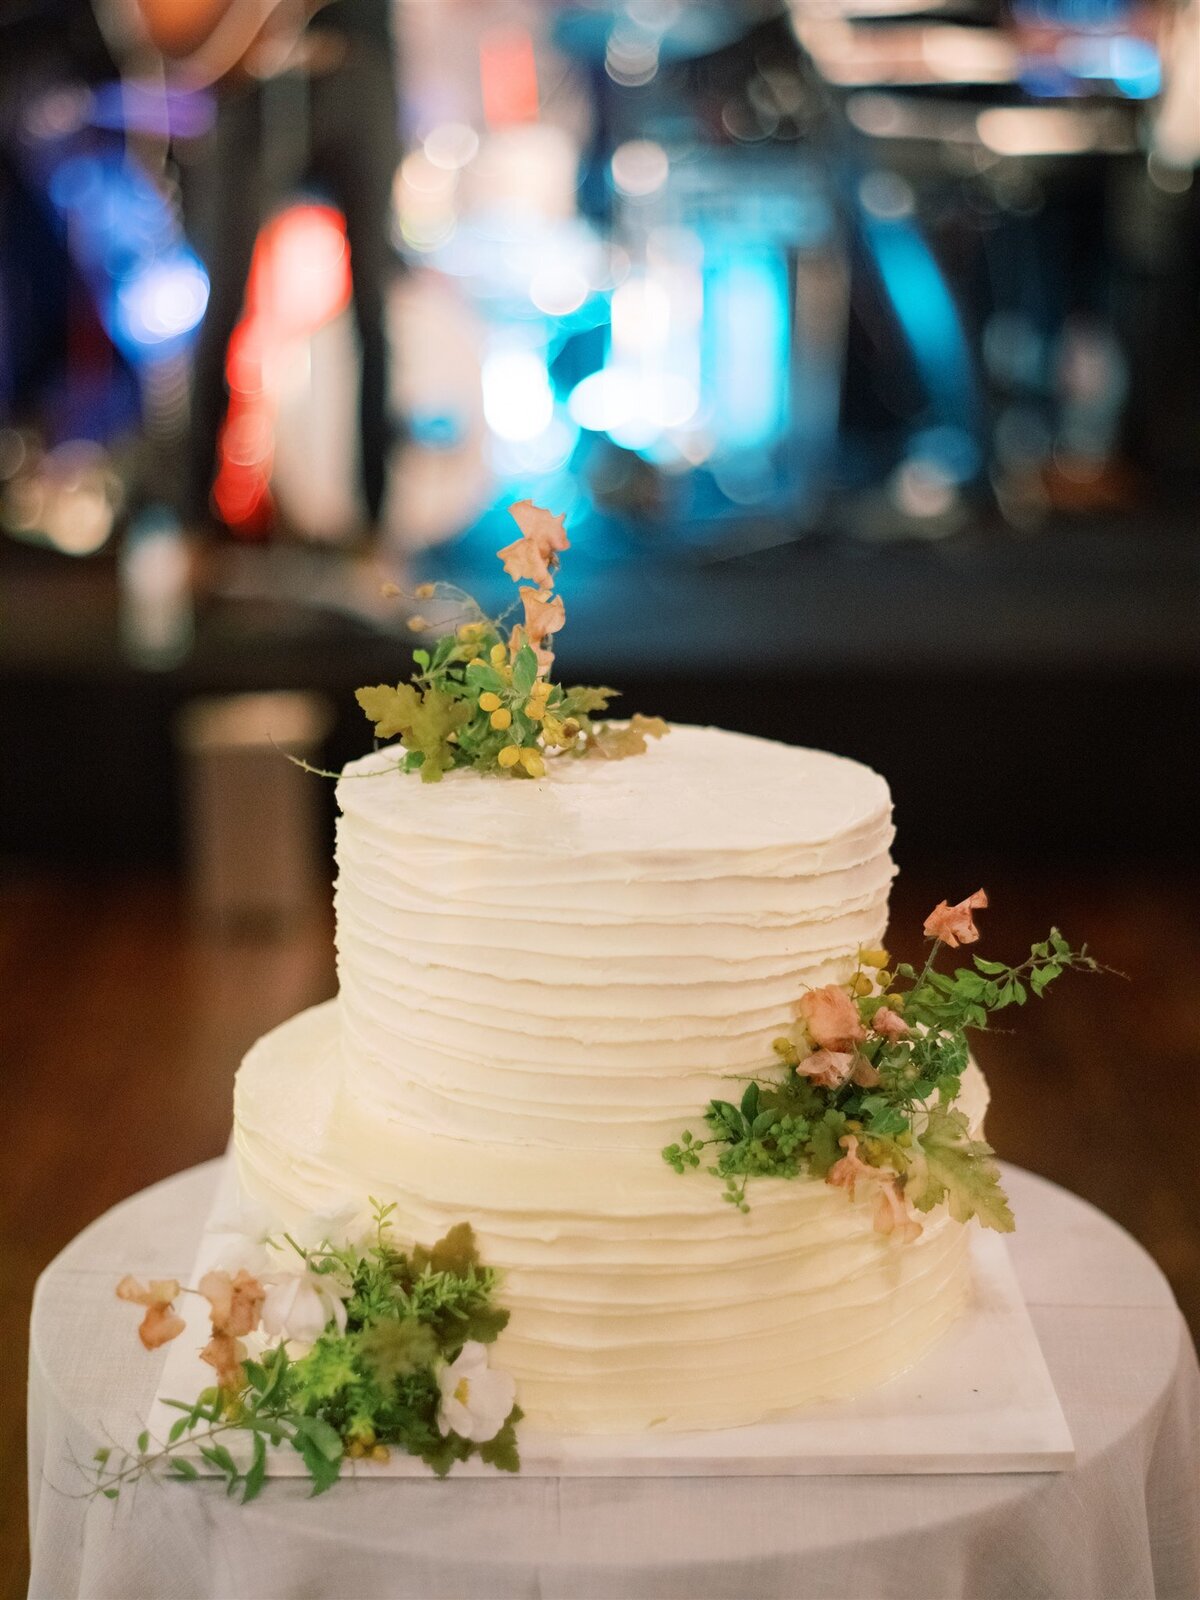 Elegant and nature-inspired wedding cake